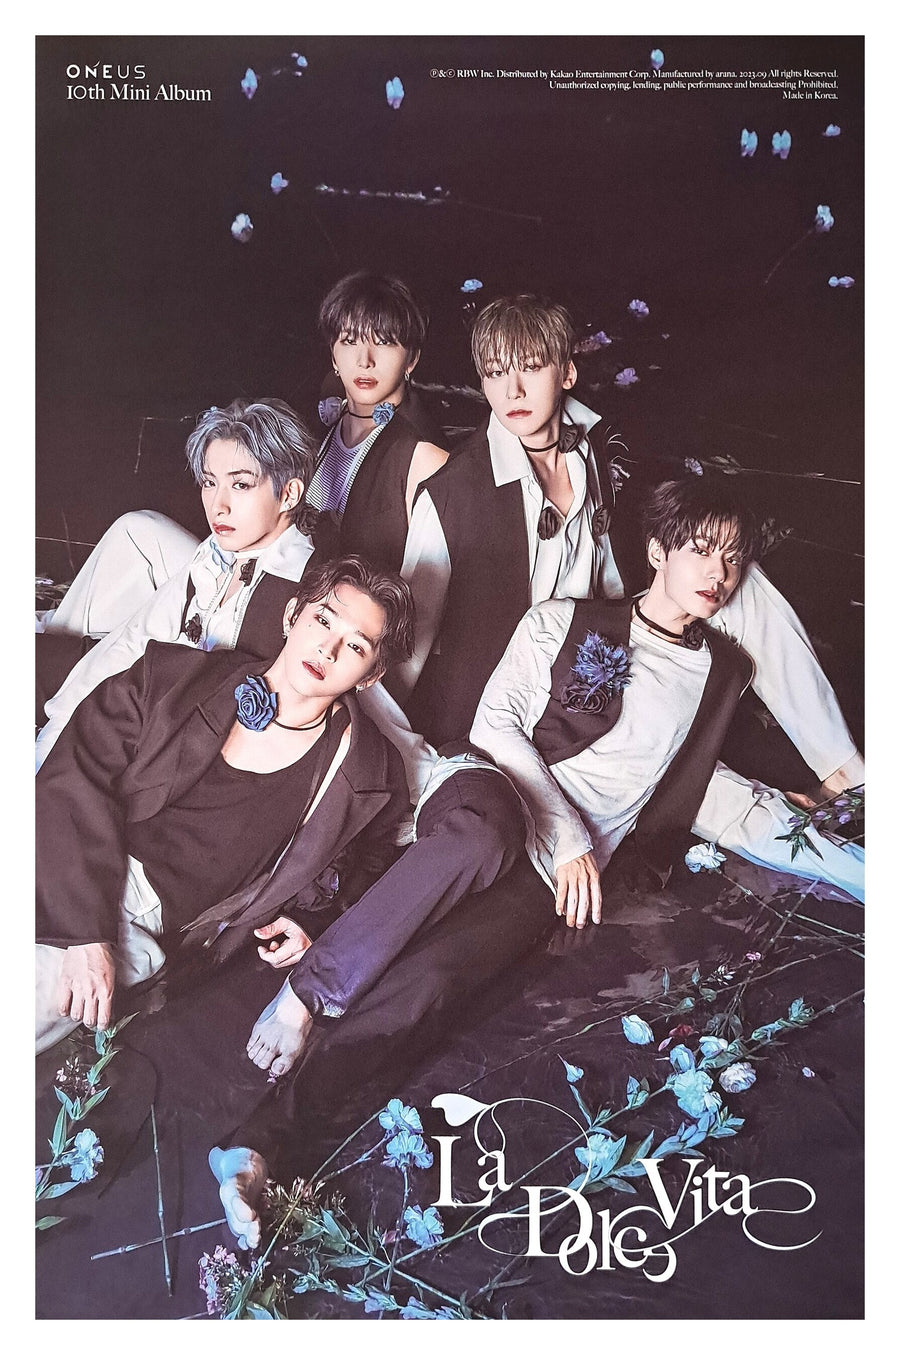 ONEUS 10th Mini Album La Dolce Vita (Main Ver.) Official Poster - Photo Concept 1